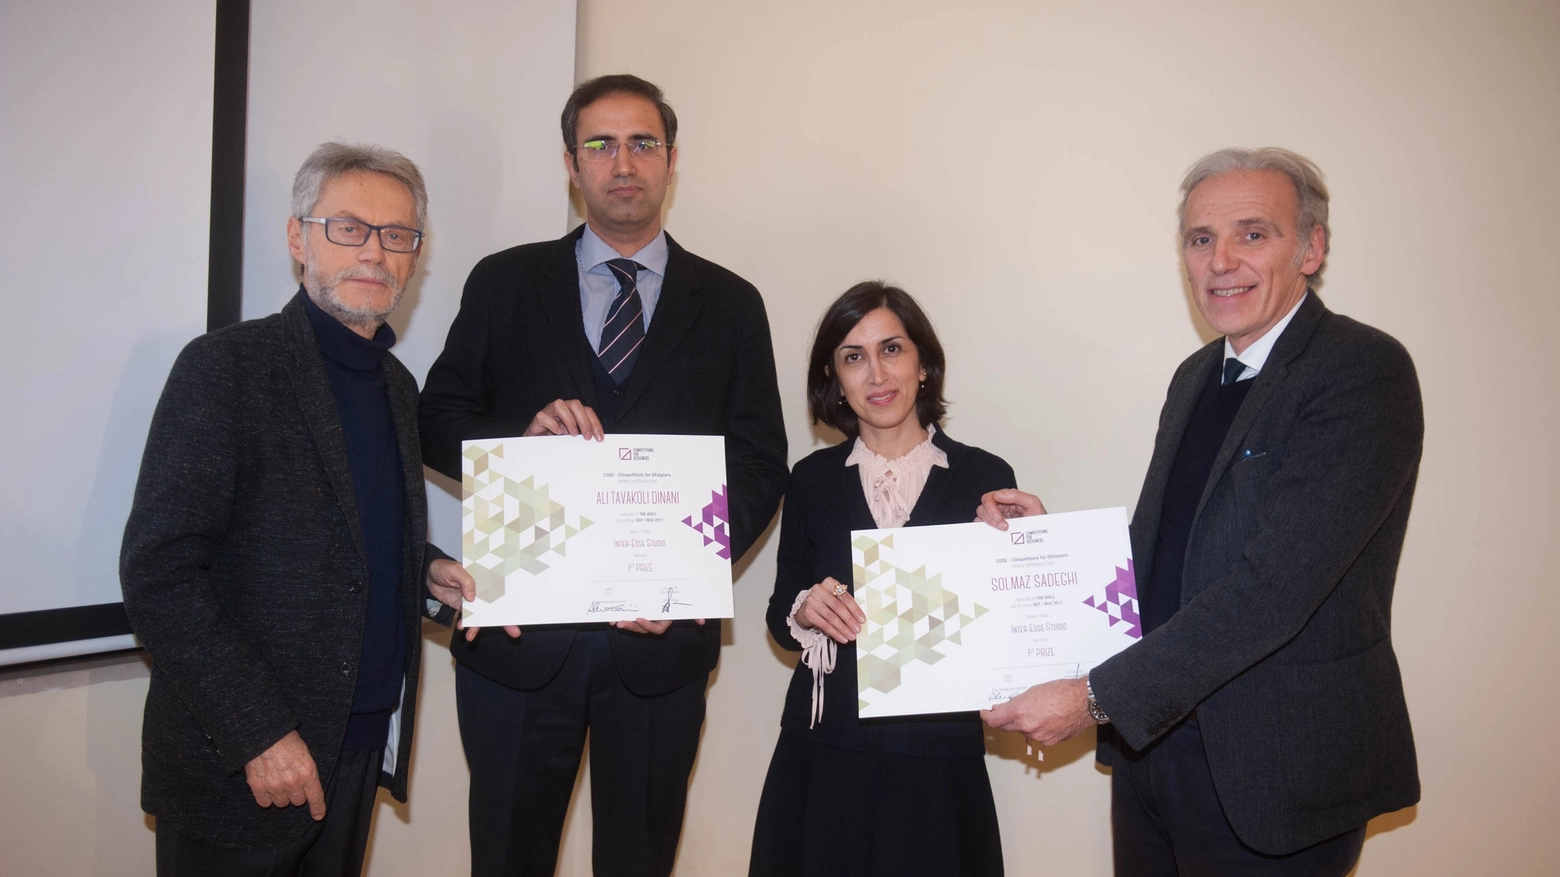 Roberto Grandi e Massimo Iosa Ghini premiano i vincitori (foto Schicchi)